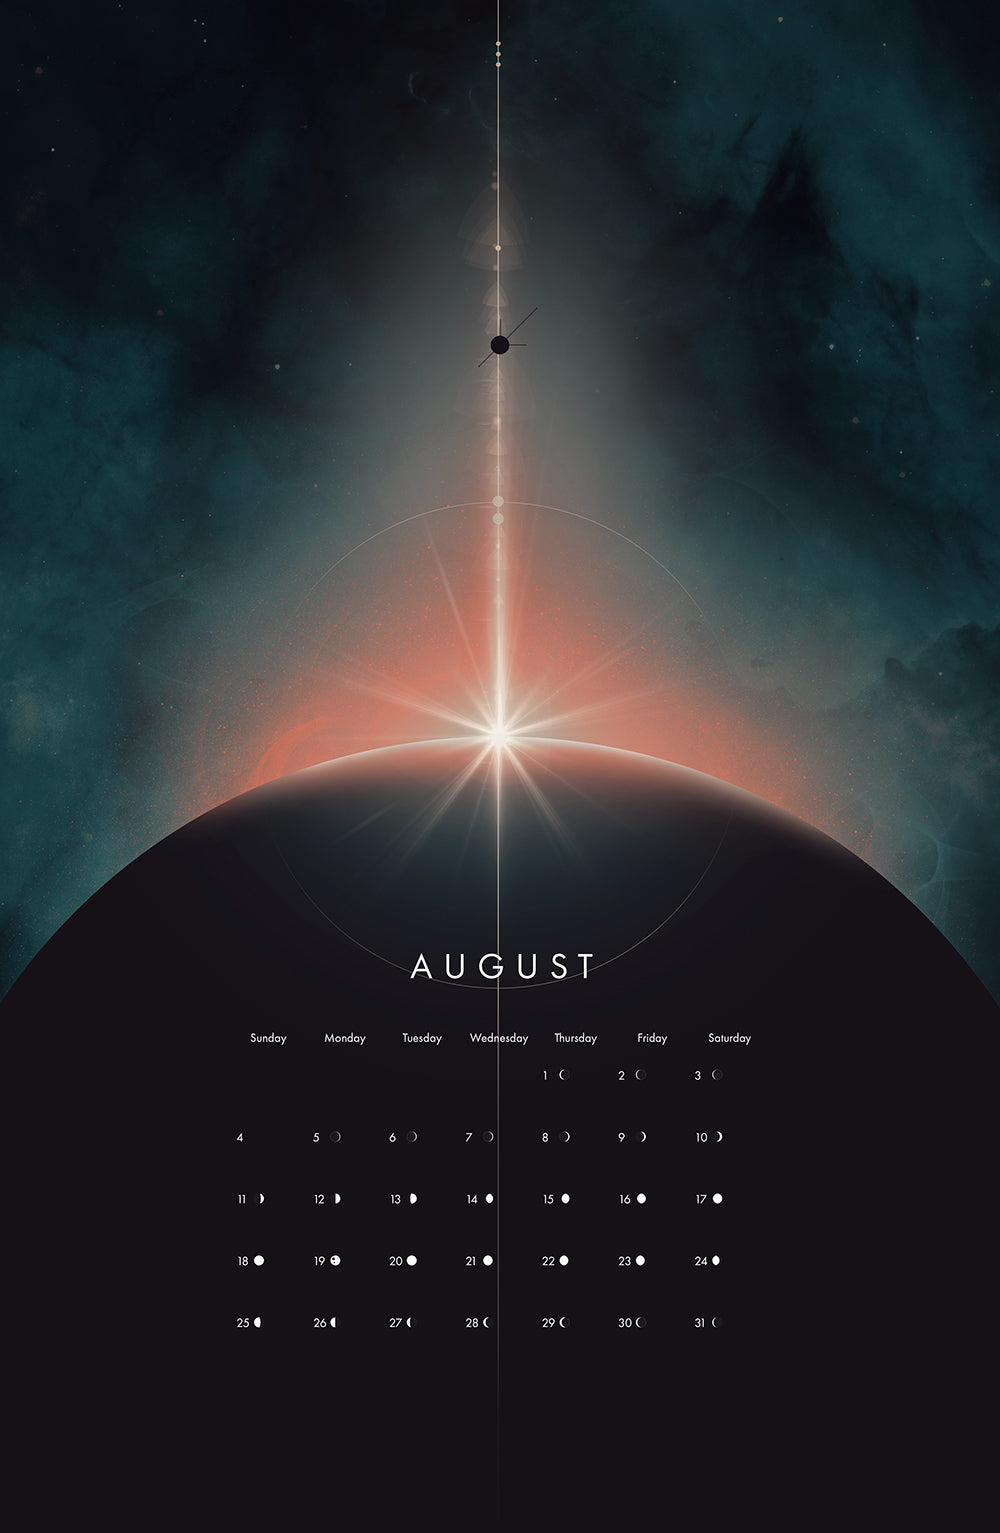 2024 Heavenly Spheres Calendar